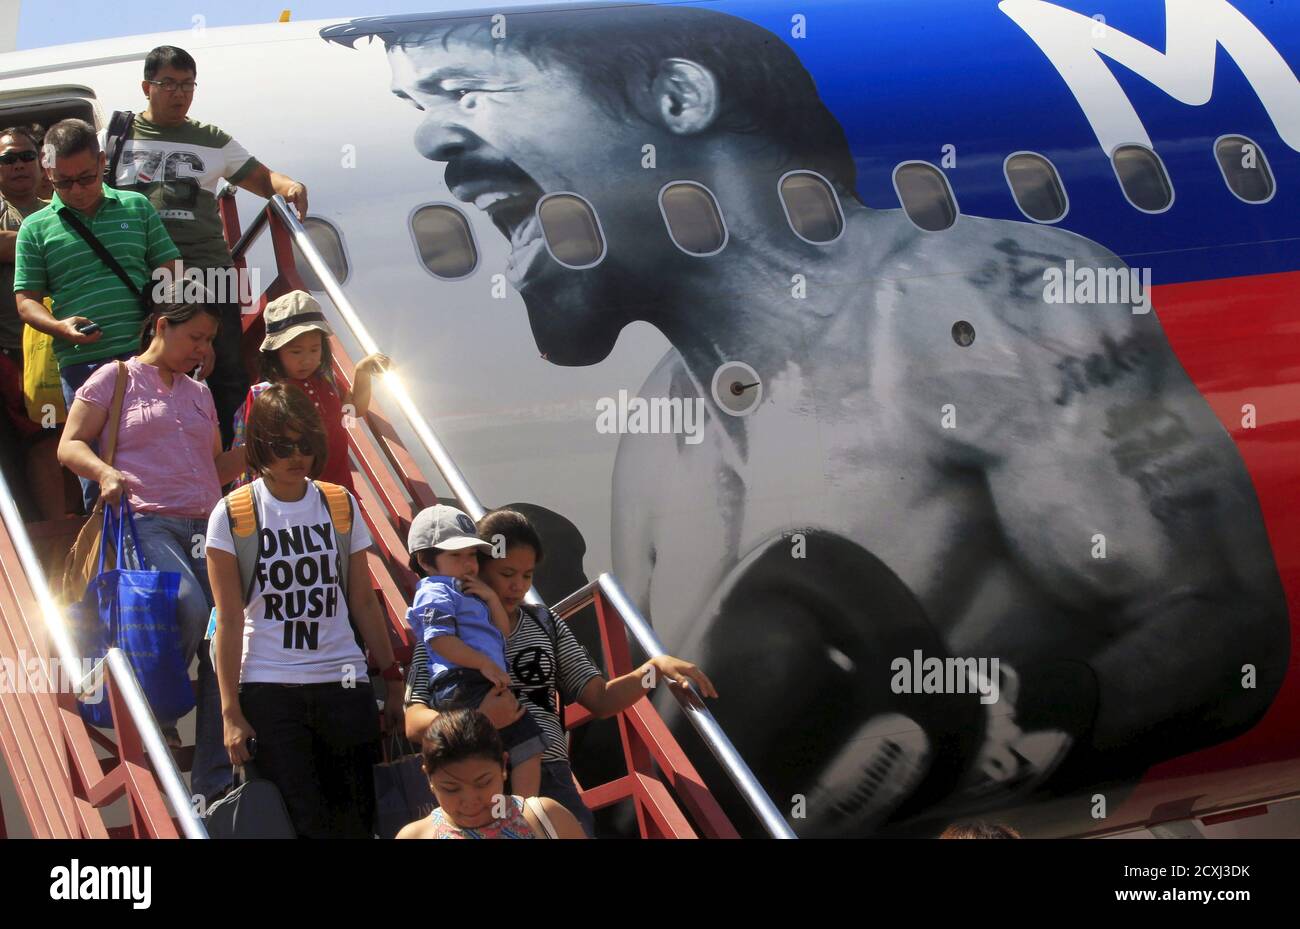 Passagiere steigen aus dem AirAsia Philippines Airbus A320, der mit dem Bild der philippinischen Boxerin Manny Pacquiao verputzt ist, als sie von Cebu am Inlandsflughafen in Pasay City, Metro Manila Apiril 28, 2015 ankommen. AirAsia Philippinen zeigen ihre Unterstützung für Pacquiao, indem sie ihr Flugzeug mit dem Namen und Gesicht der Box-Ikone bemalen, sagte ein AirAsia-Beamter. Pacquiao wird am 2. Mai in Las Vegas, Nevada gegen den amerikanischen Boxer Floyd Mayweather Jr. antreten. REUTERS/Romeo Ranoco Stockfoto